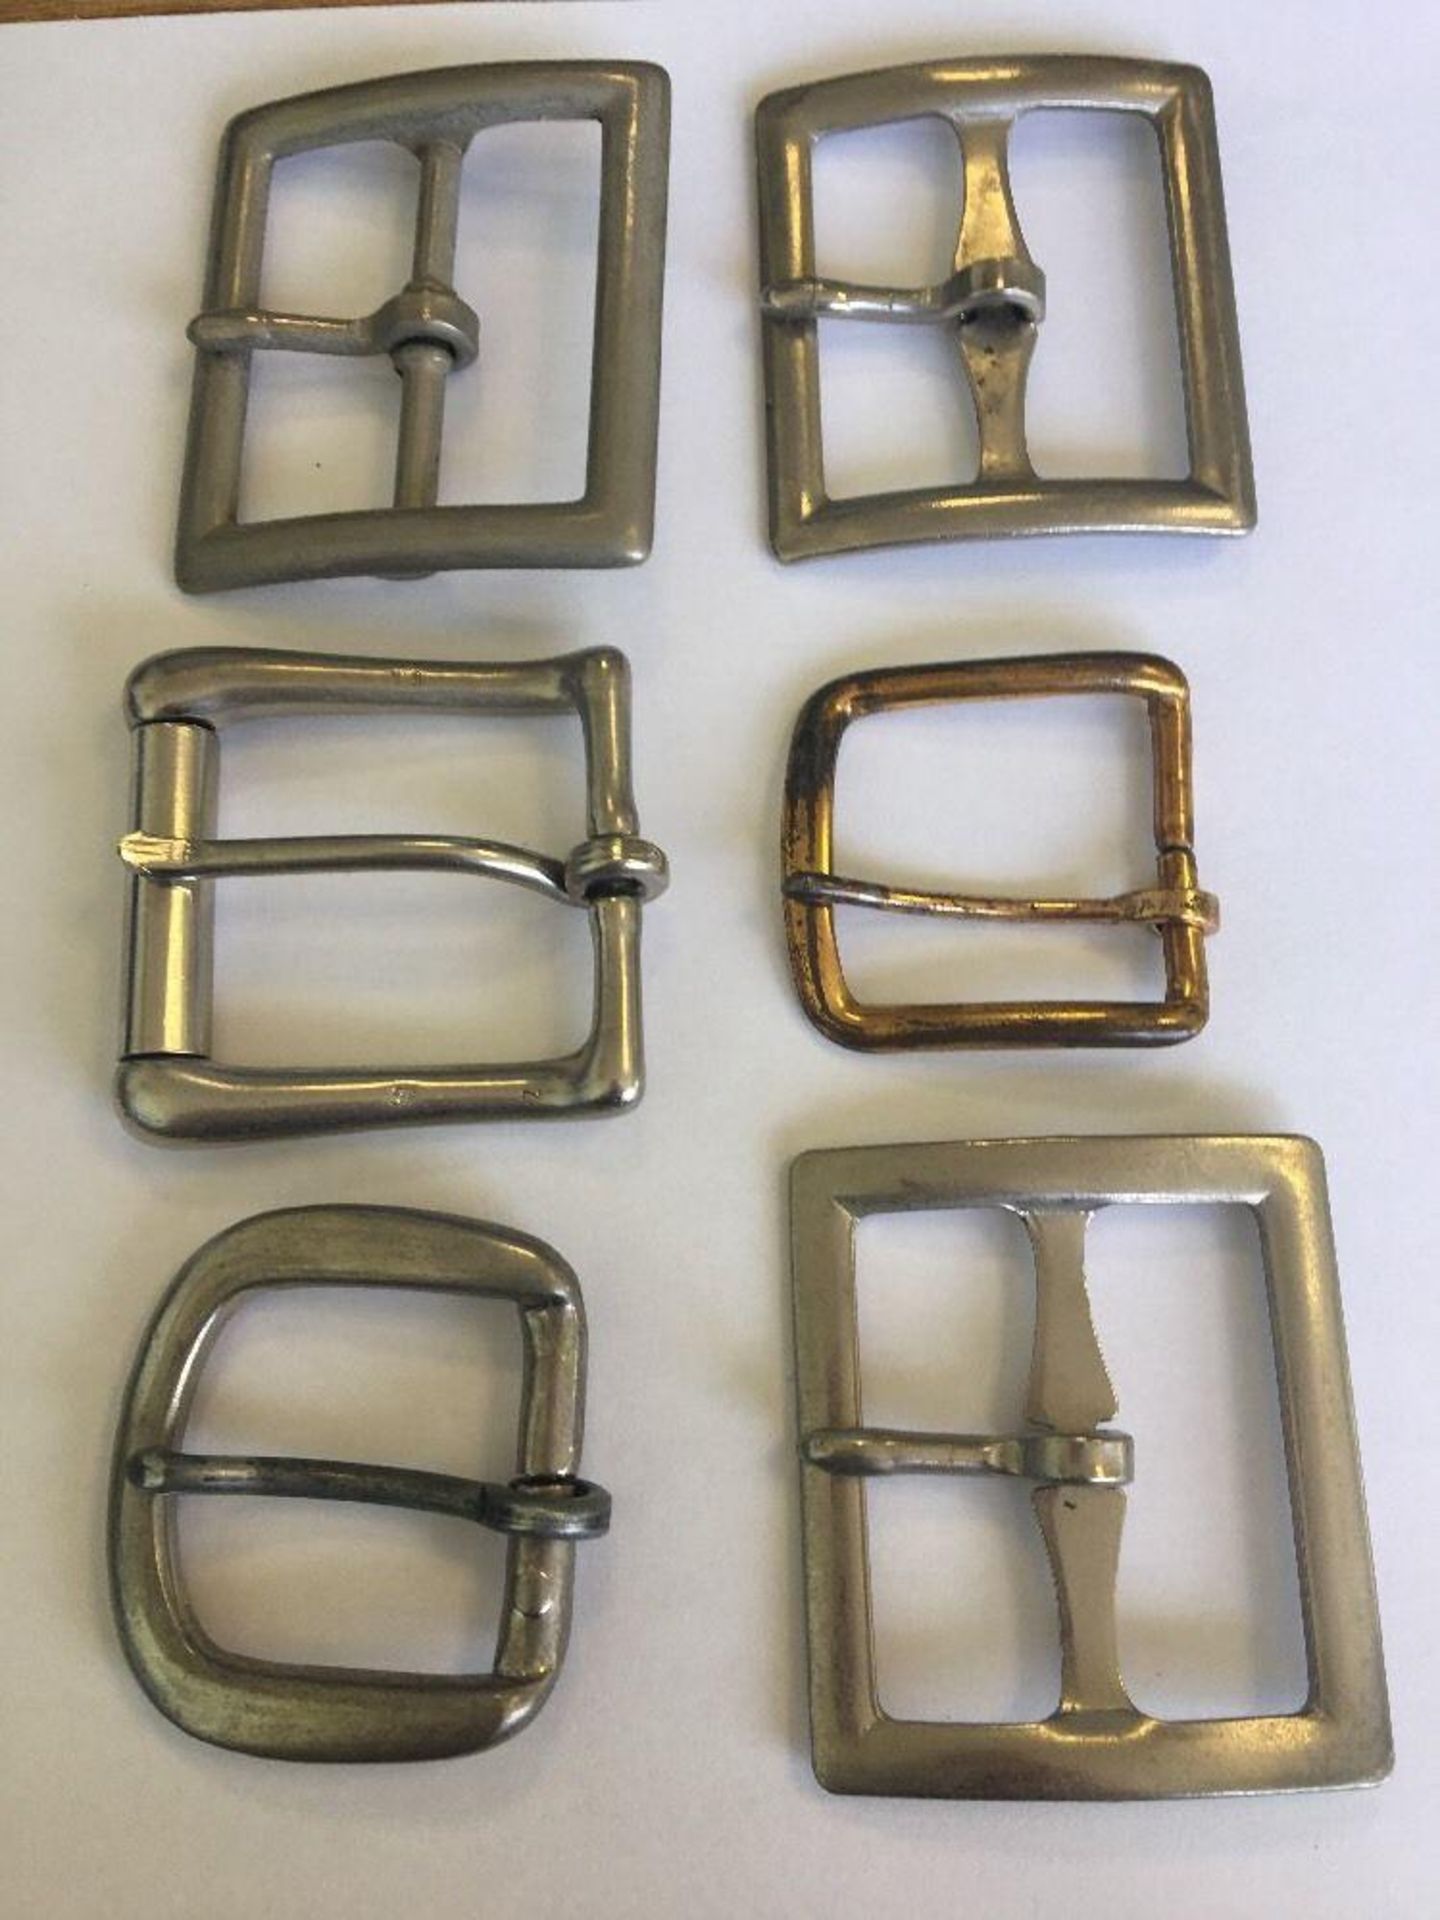 Group of metal buckles